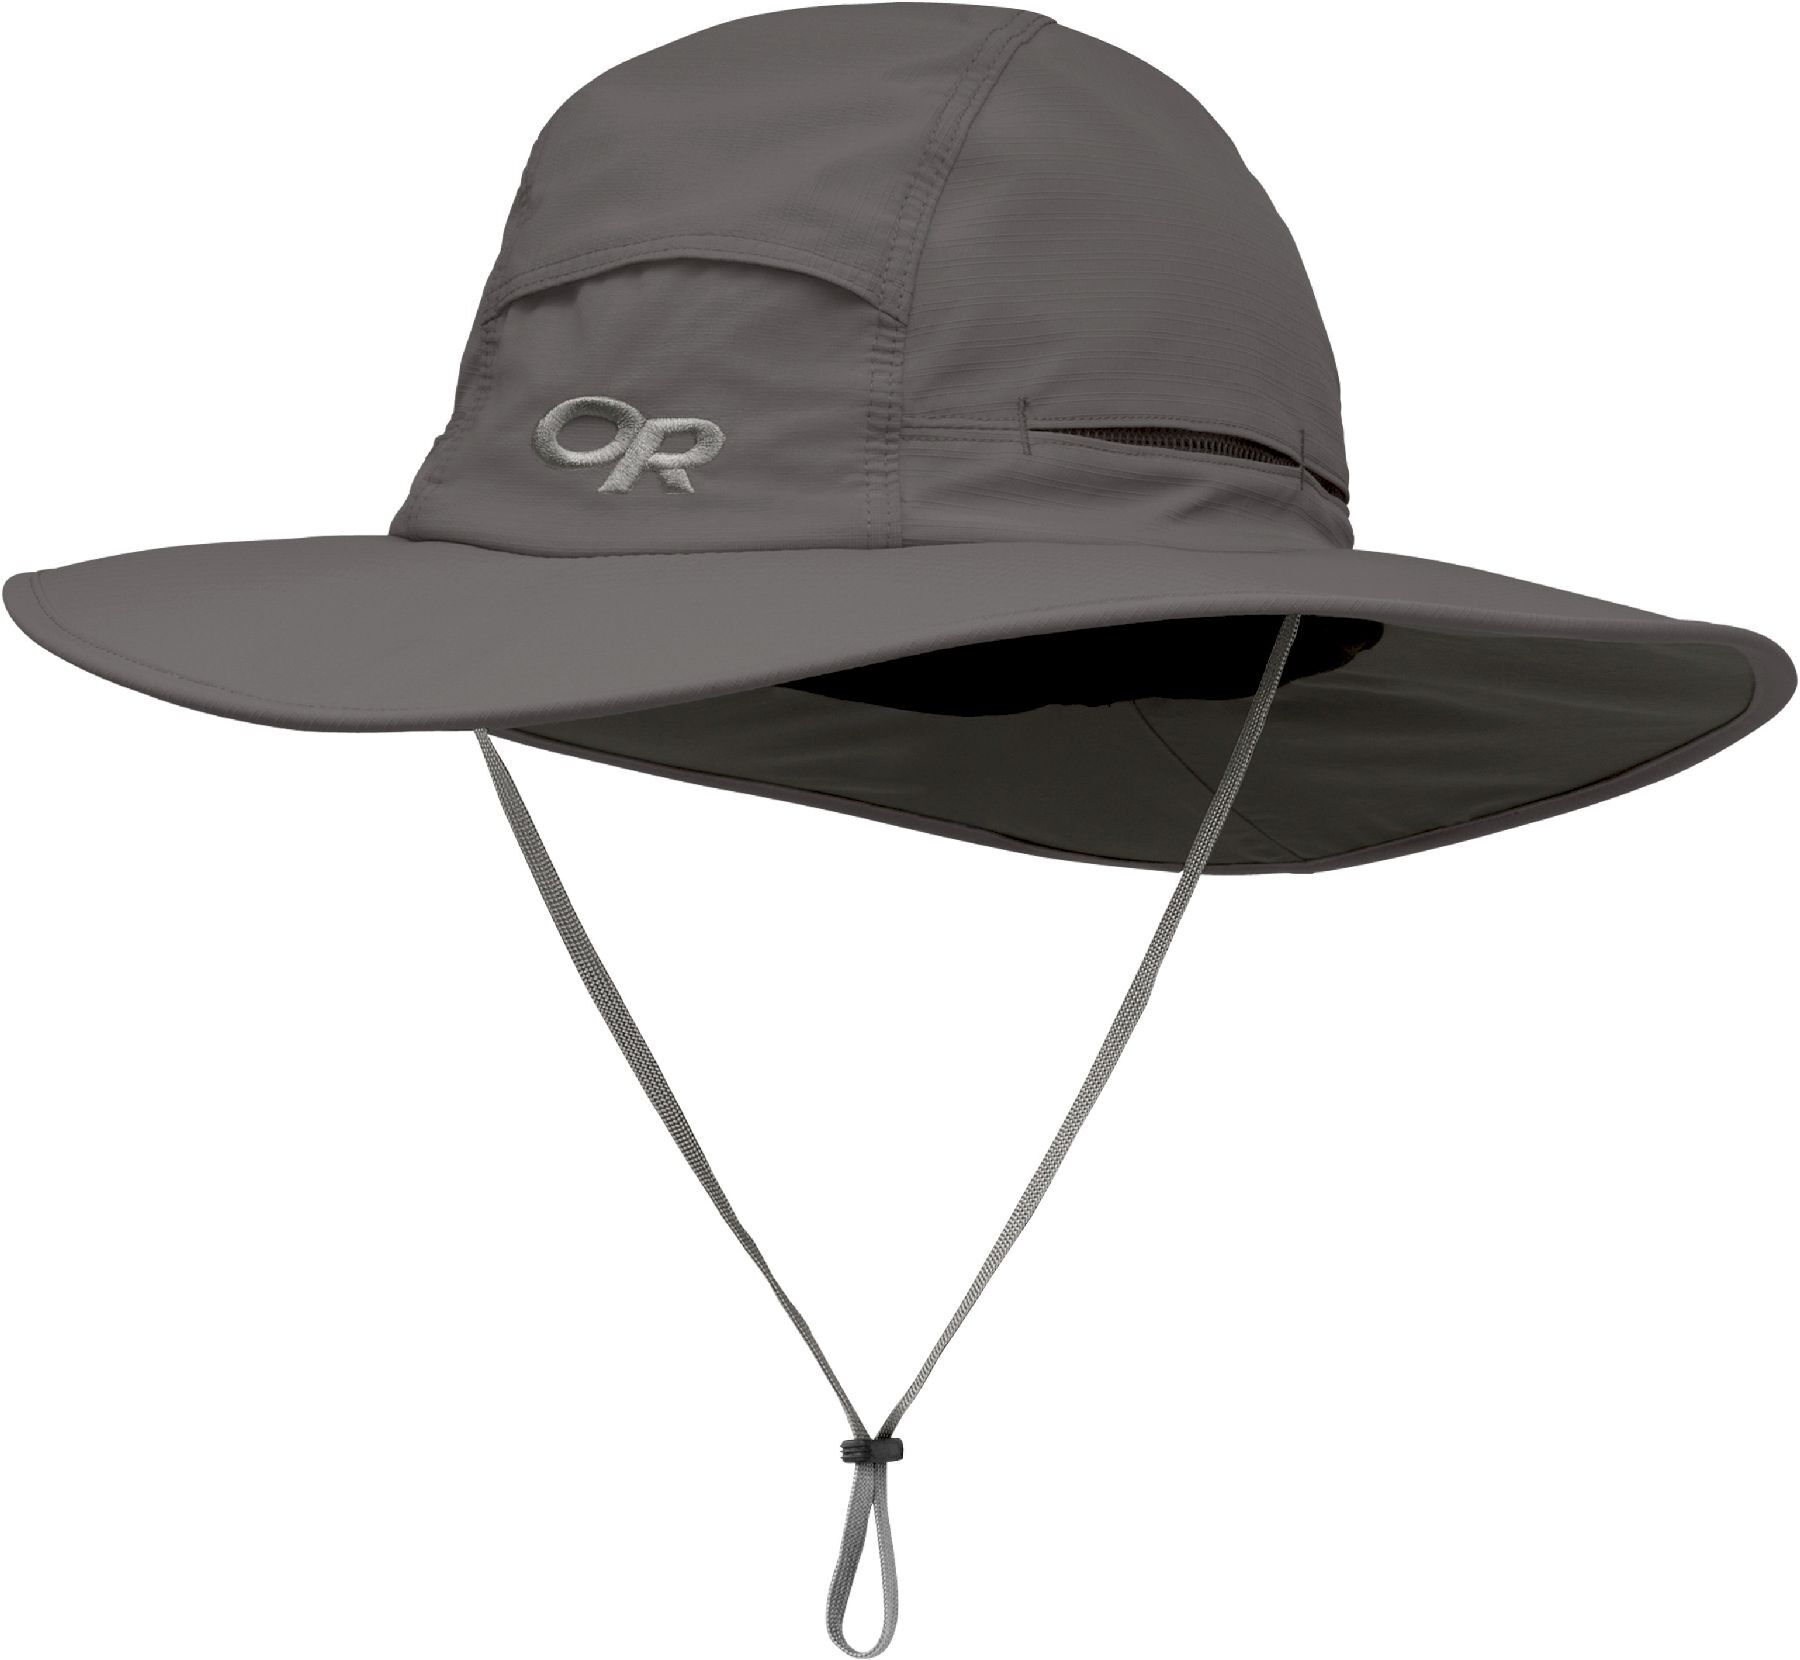 Outdoor Research Sombriolet Sun Hat - Hattu